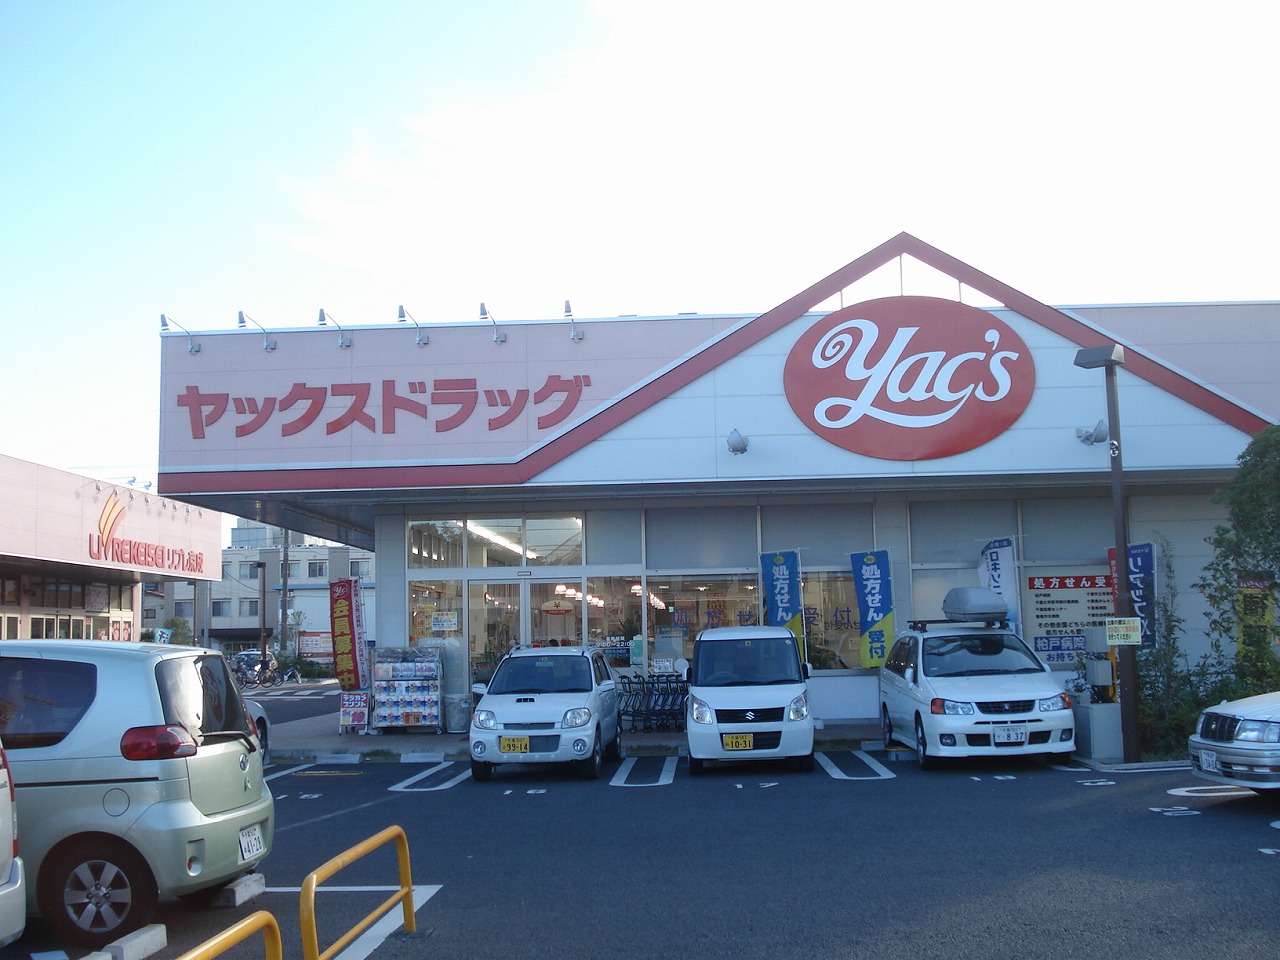 Dorakkusutoa. Yakkusu drag Chiba Prefecture-cho shop 734m until (drugstore)